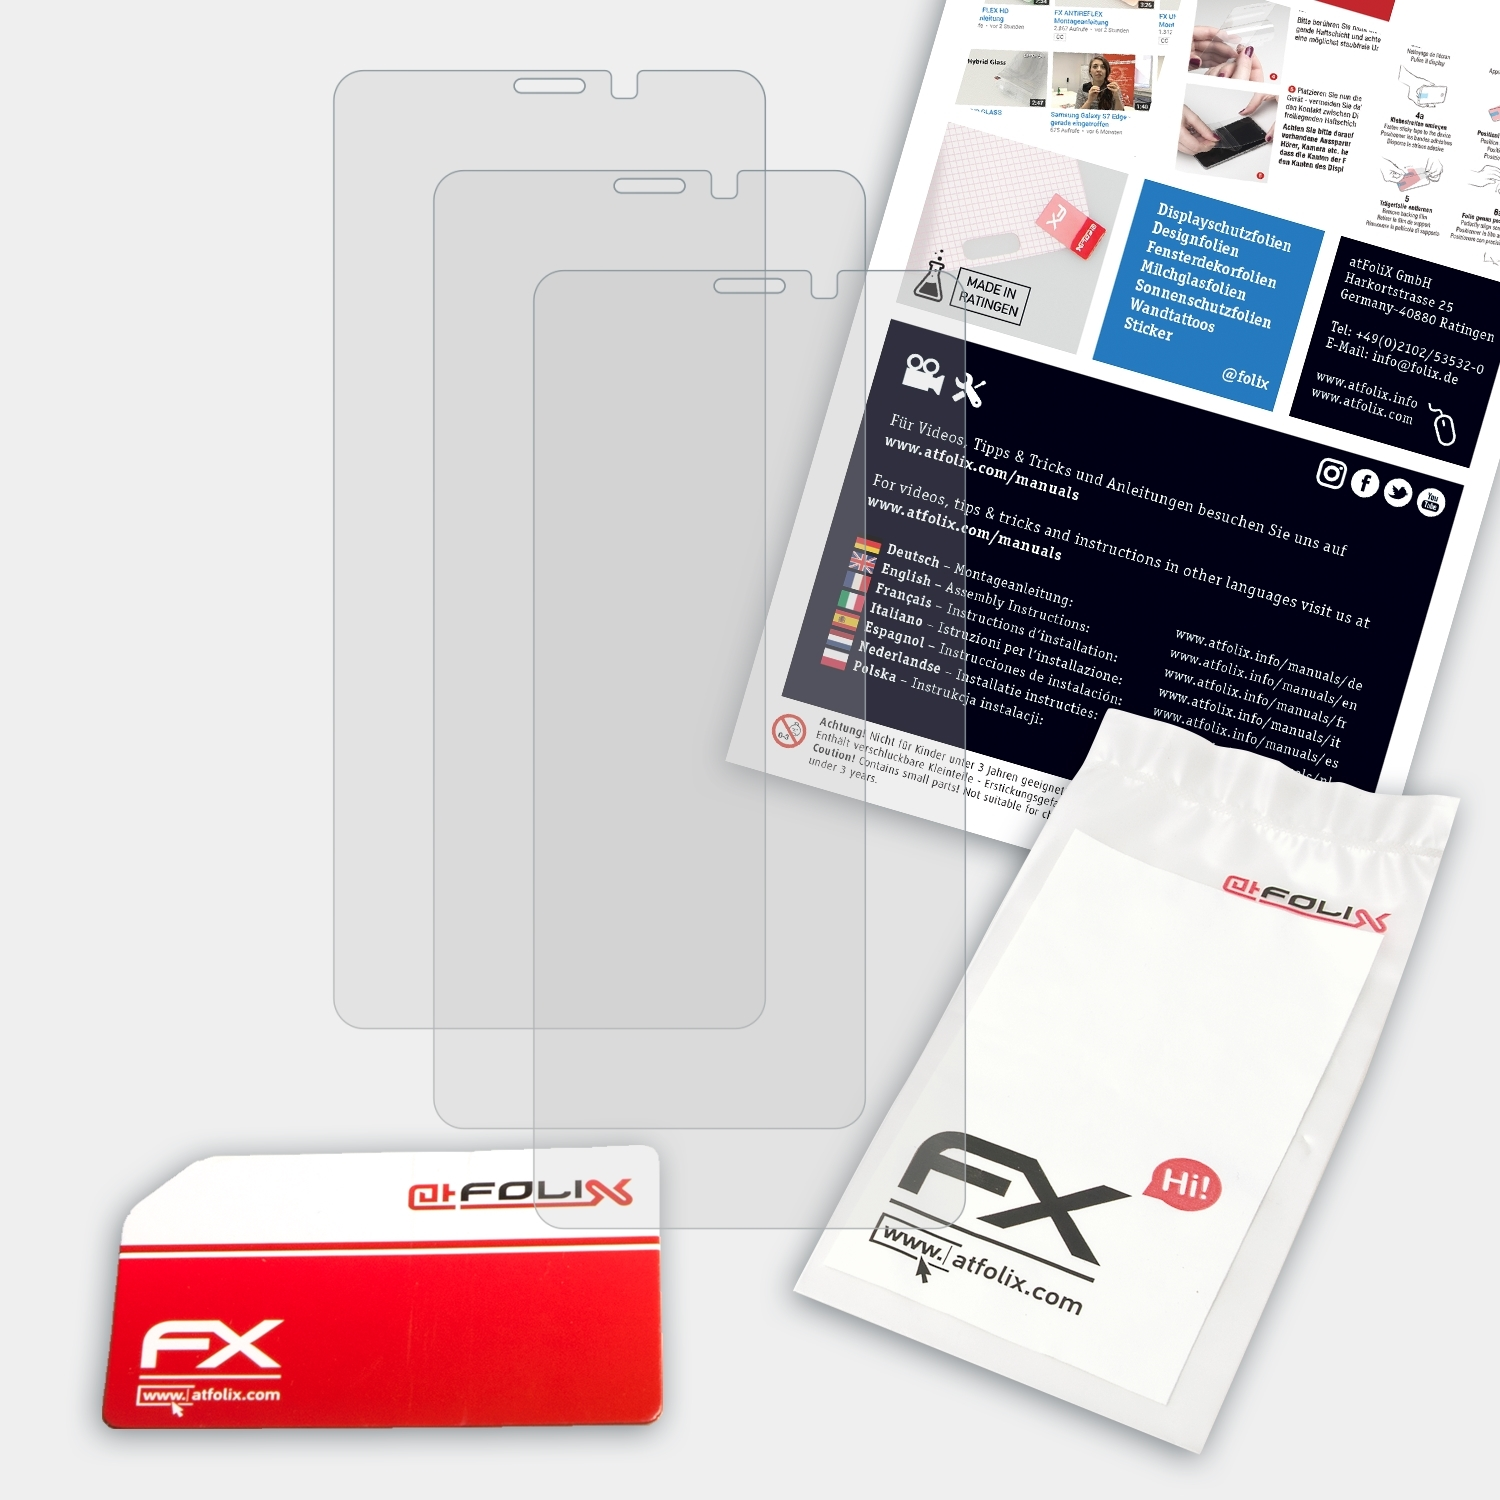 ATFOLIX 3x FX-Antireflex Displayschutz(für Plus) Ulefone P6000